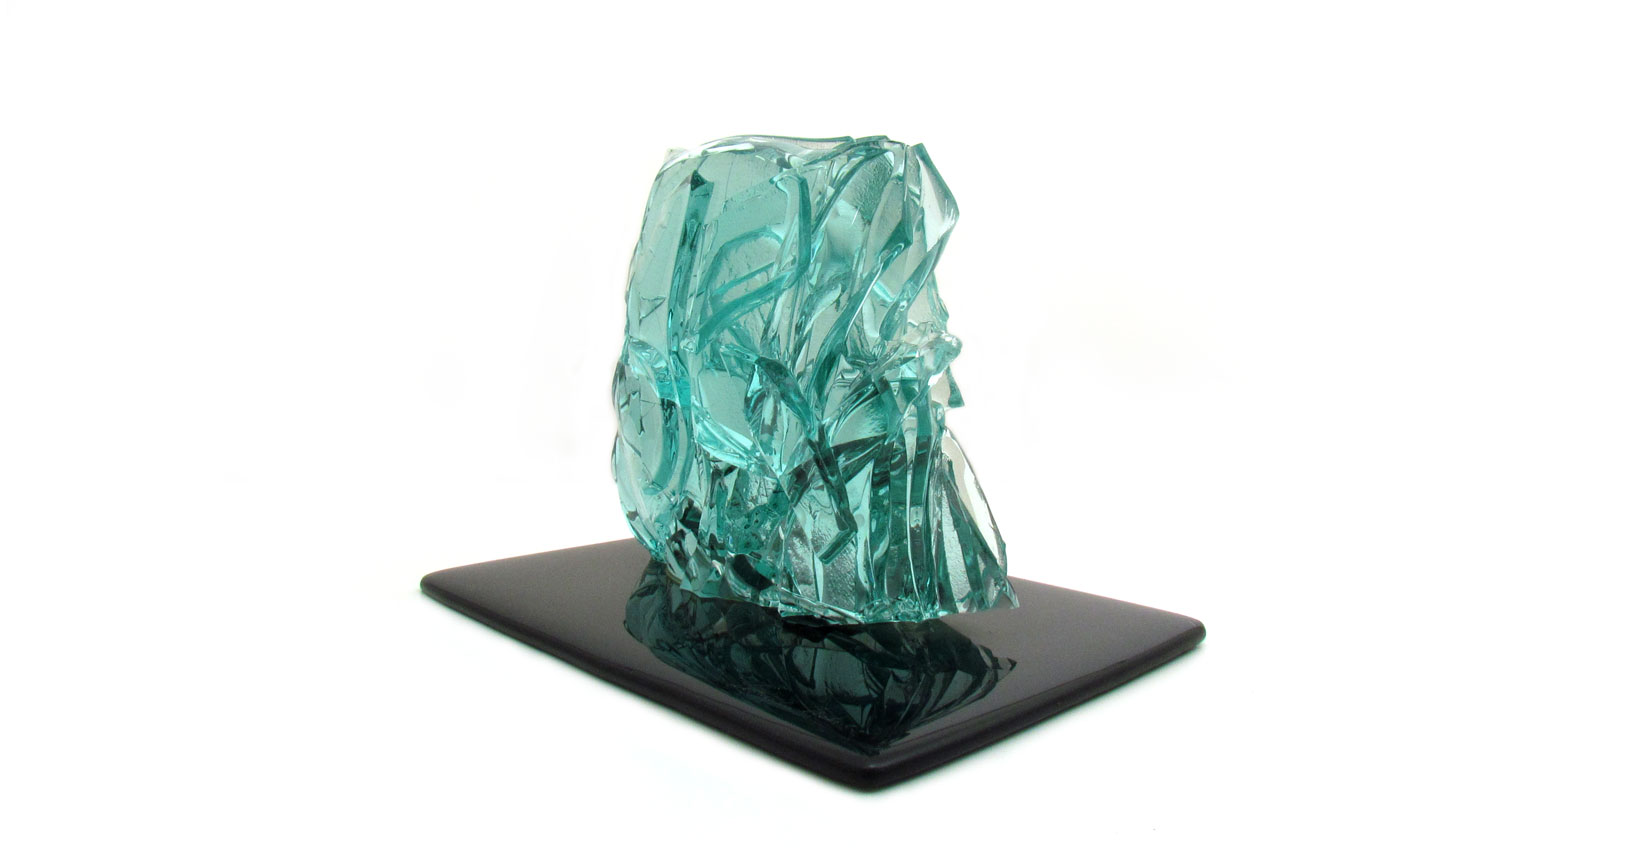 nuvola scultura vetro glass sculpture furniture vintage design iconic design cristallo crystall leonardo nobili fiam